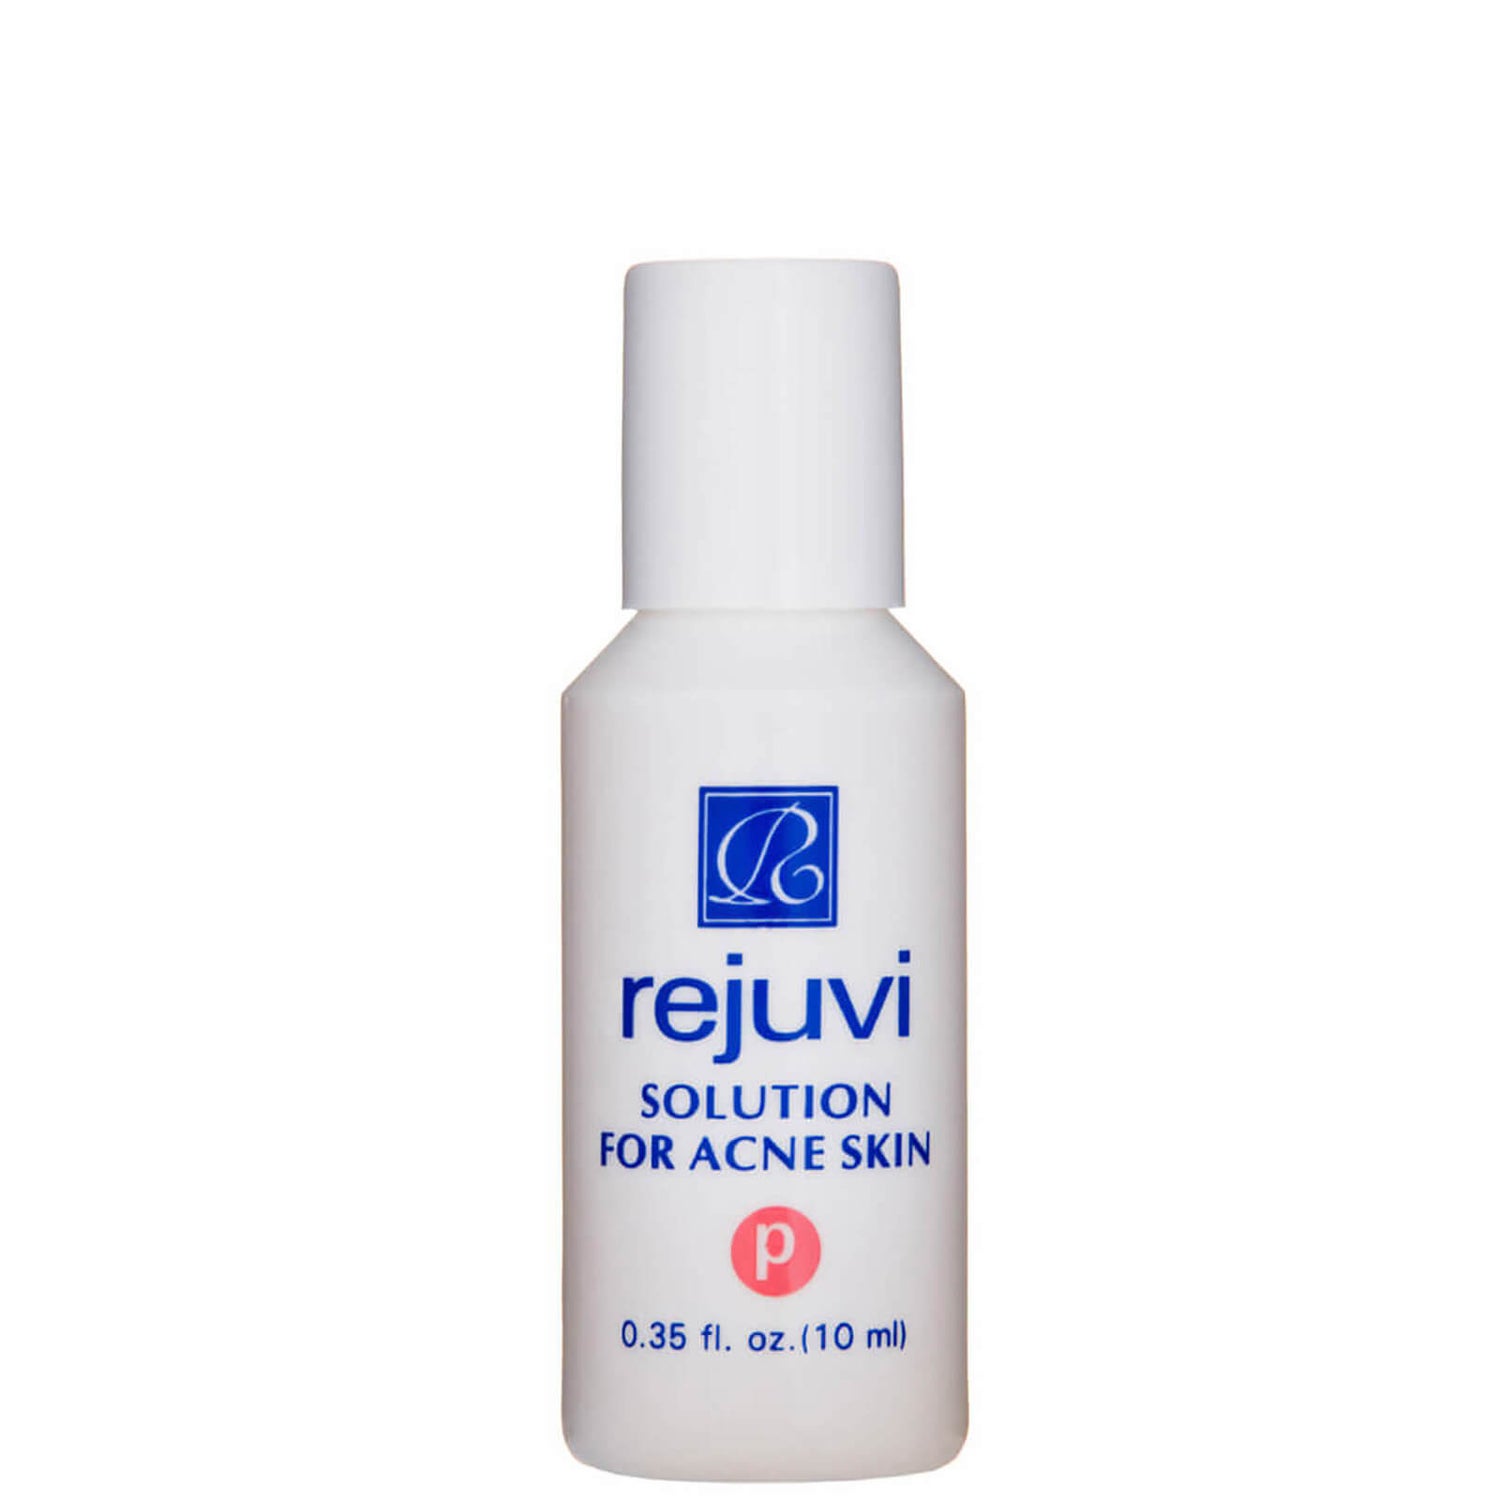 Rejuvi 'p' Solution for Acne Skin (0.35 oz.)